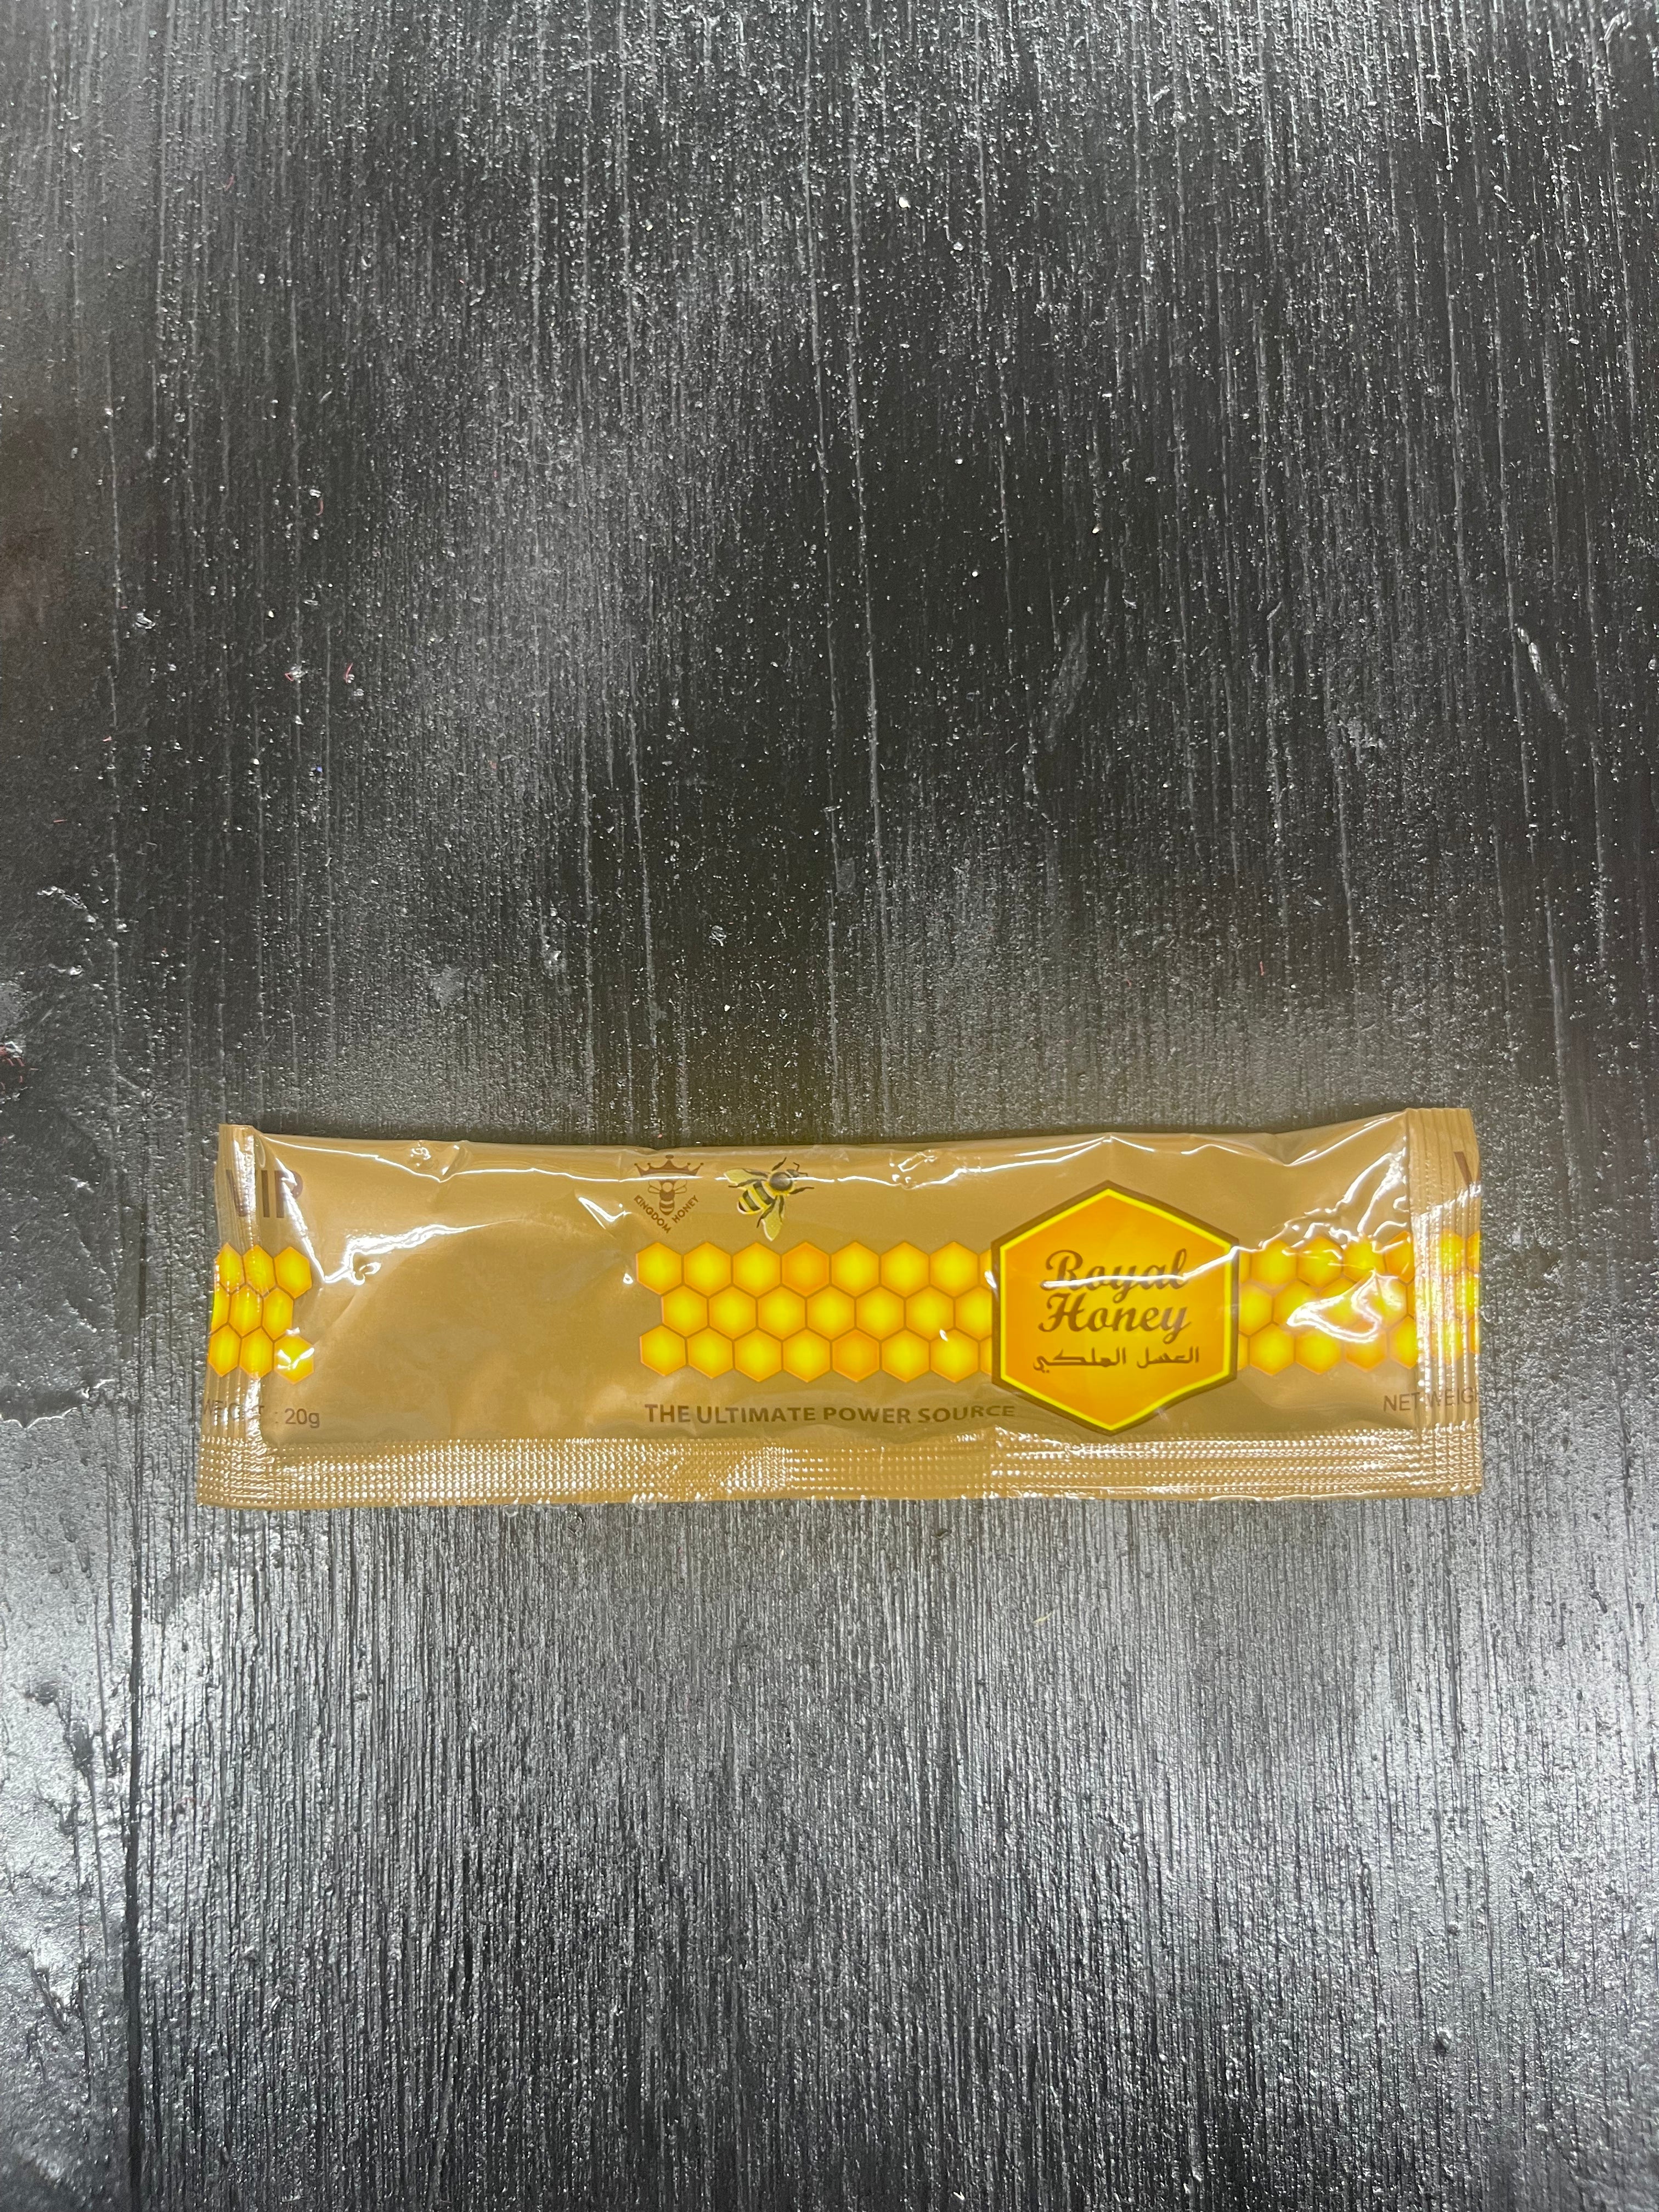 Pin on Royal Honey Enhancement